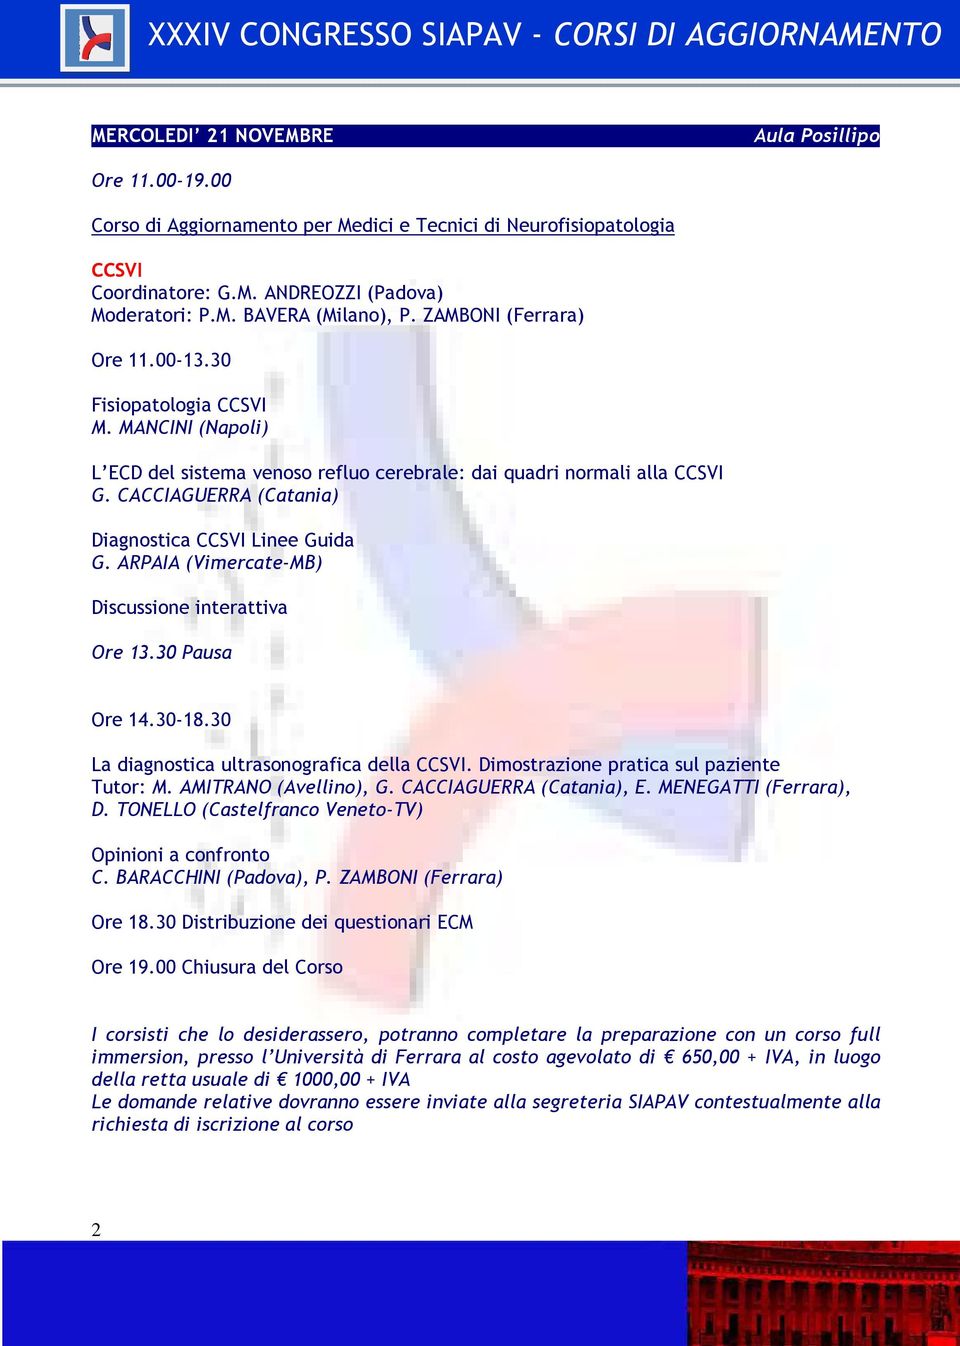 CACCIAGUERRA (Catania) Diagnostica CCSVI Linee Guida G. ARPAIA (Vimercate-MB) Discussione interattiva Ore 13.30 Pausa Ore 14.30-18.30 La diagnostica ultrasonografica della CCSVI.